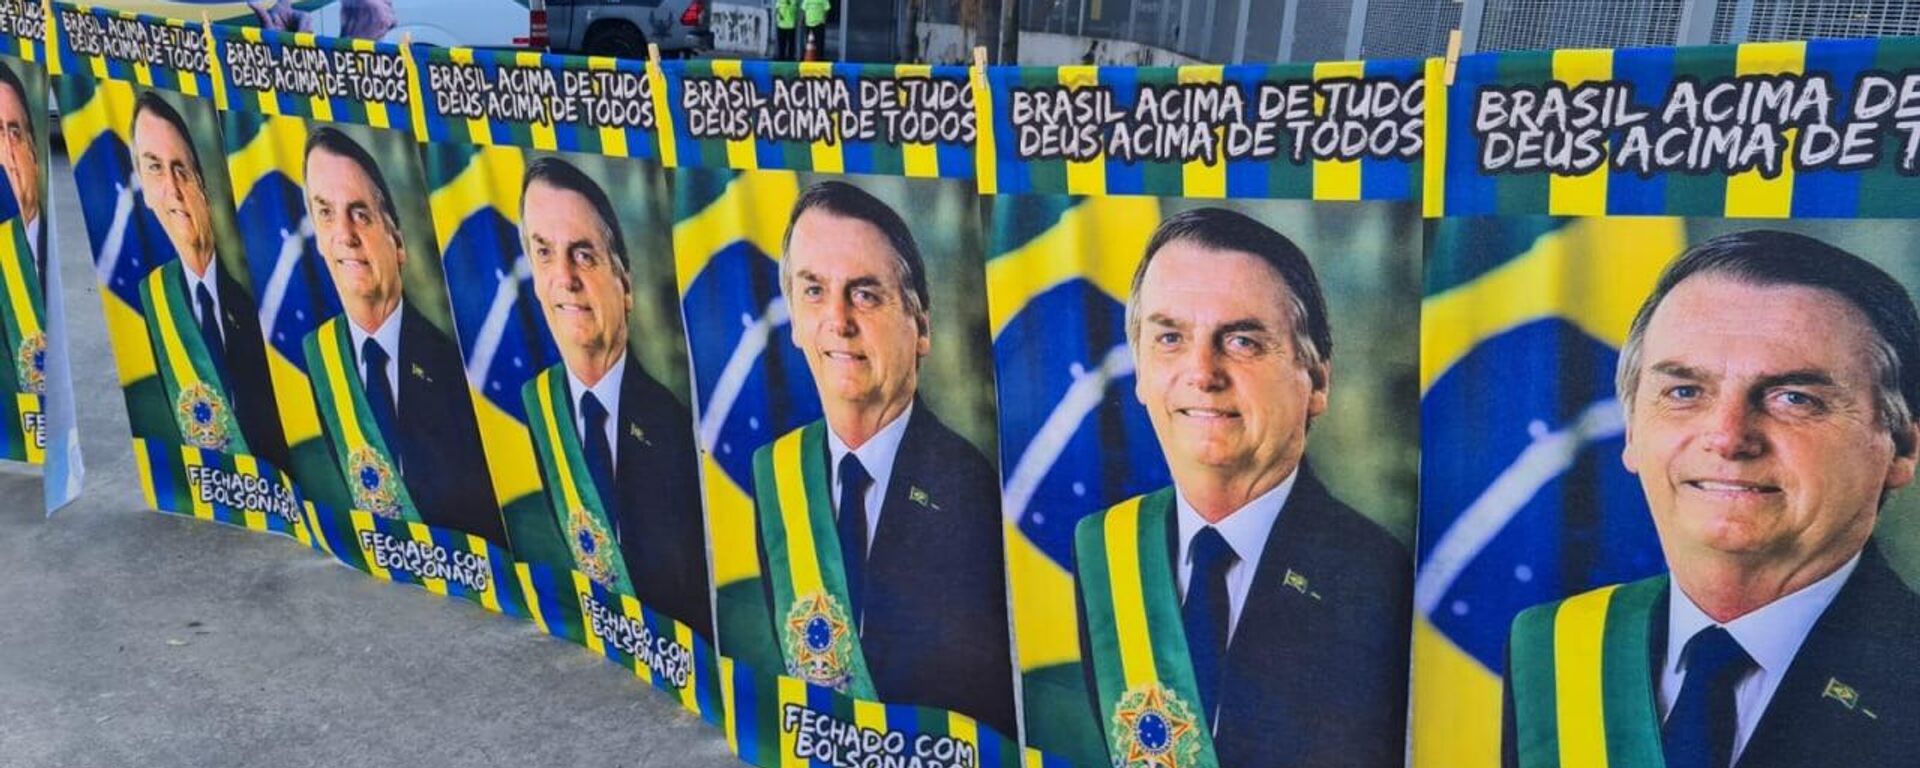 Miles de personas en Rio de Janeiro participaron en el acto de lanzamiento de la candidatura presidencial de Jair Bolsonaro - Sputnik Mundo, 1920, 24.07.2022